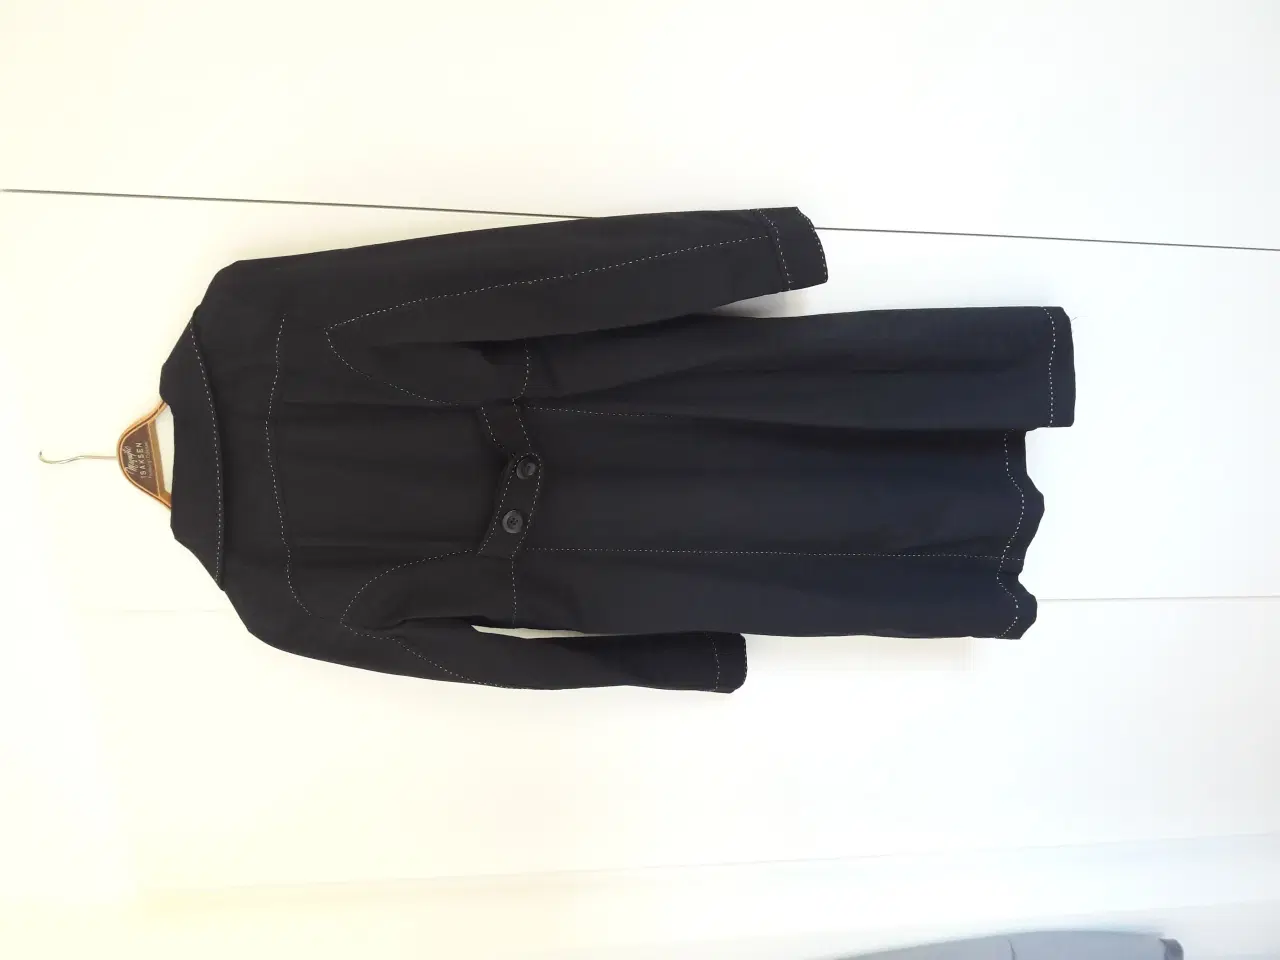 Billede 2 - sort frakke til efteråret